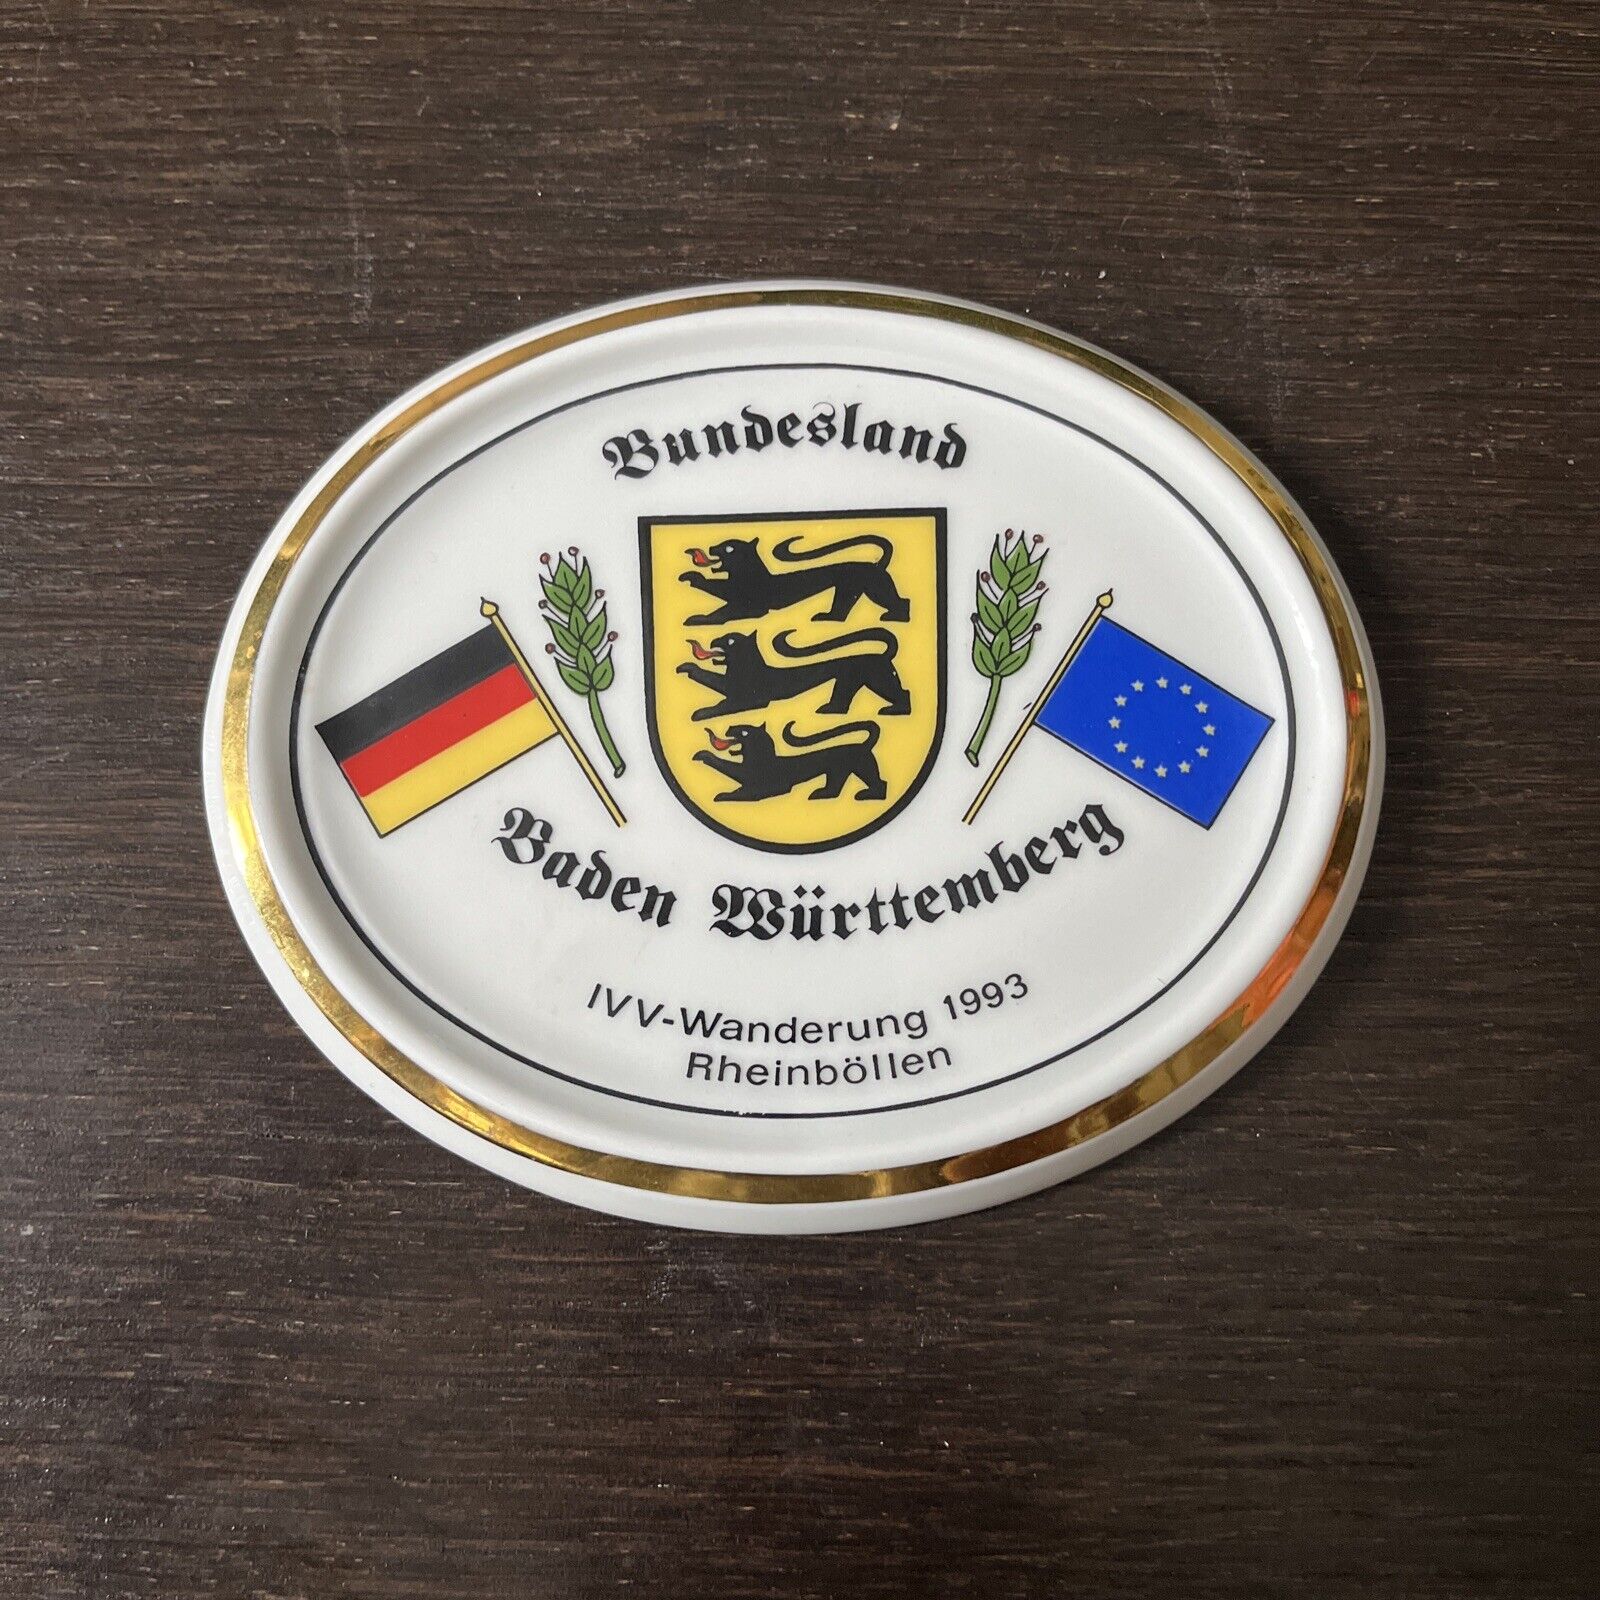 IVV WANDERUNG RHEINBOLLEN Bundesland Plate Baden Wurttemberg 1993